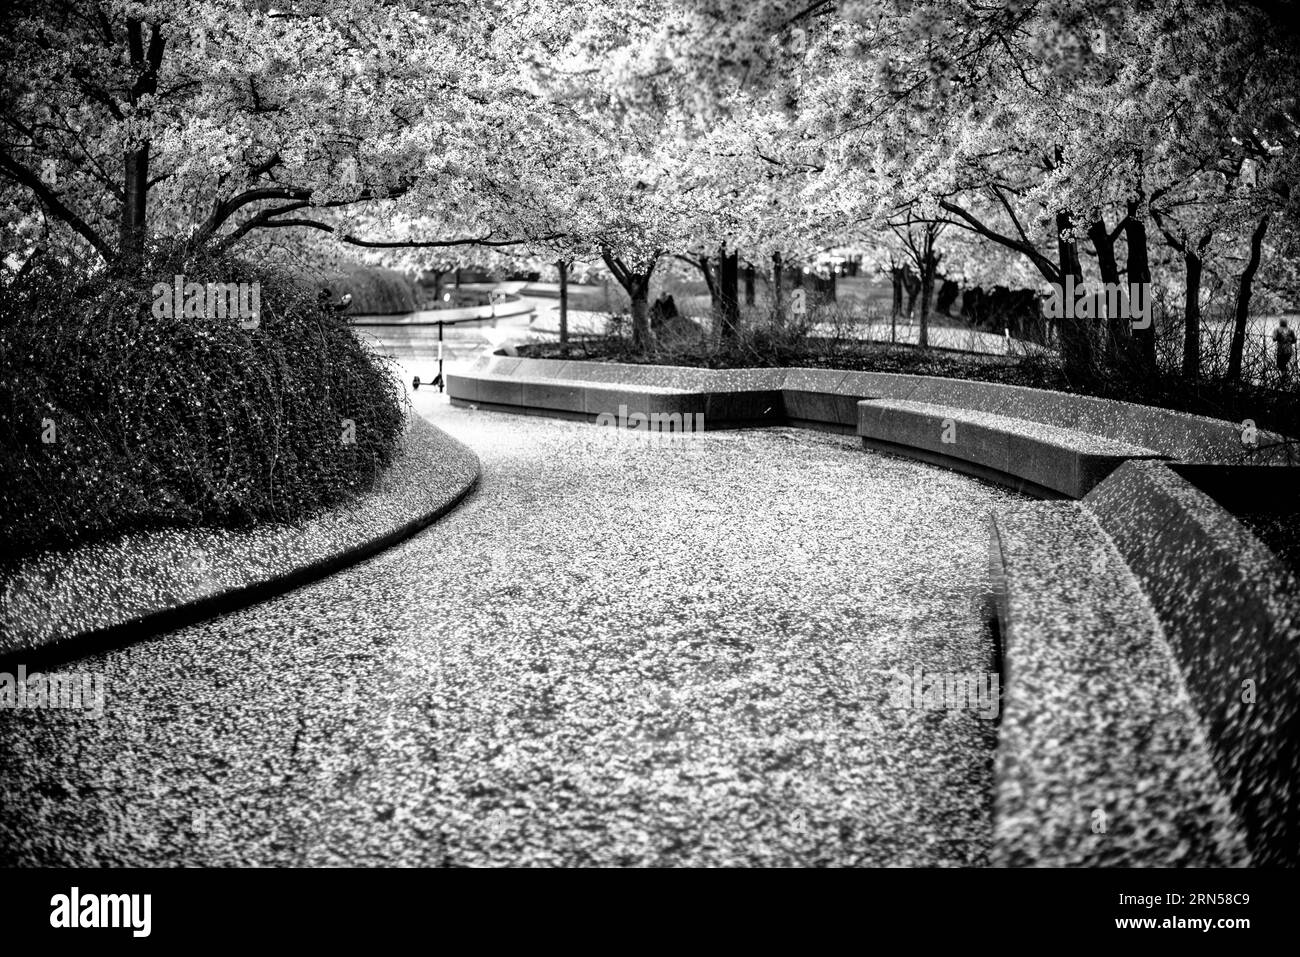 WASHINGTON DC, Vereinigte Staaten – Ein Schwarzweißfoto der berühmten Kirschblüten von Washington DC. Jedes Frühjahr blüht die Kirschblüte in voller Blüte um das Tidal Basin und markiert den Beginn des Frühlings in der Hauptstadt der Nation. Dieses jährliche Ereignis zieht Tausende an und symbolisiert die andauernde Freundschaft zwischen den USA und Japan, ein Geschenk Tokios aus dem Jahr 1912. Stockfoto